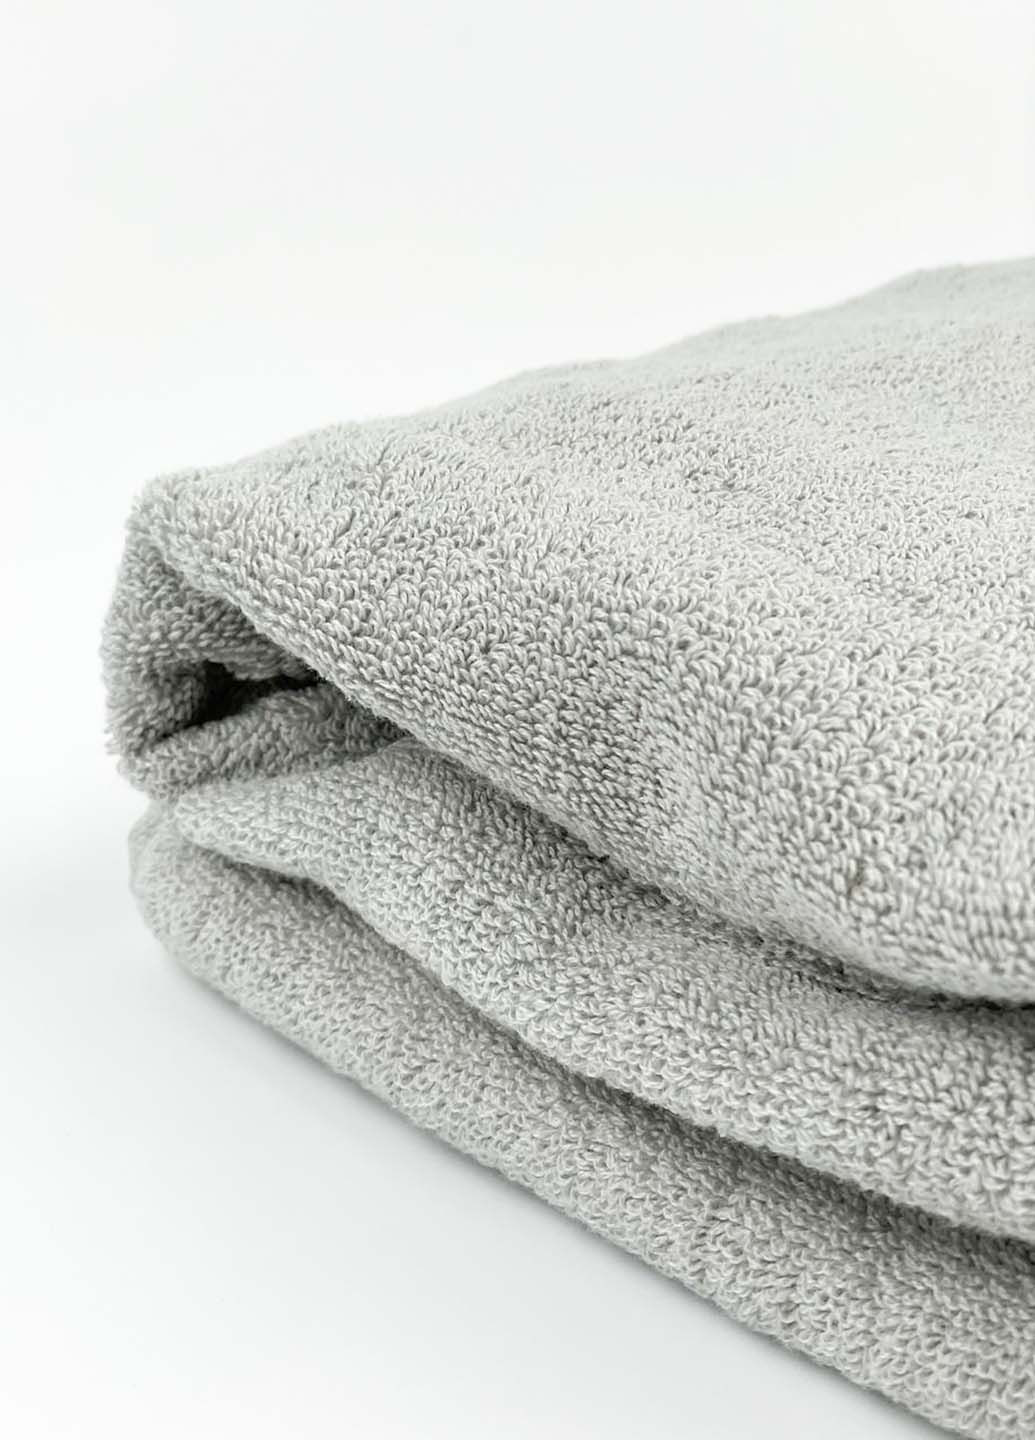 Homedec полотенце лицевое махровое 100х50 см полоска светло-серый производство - Турция